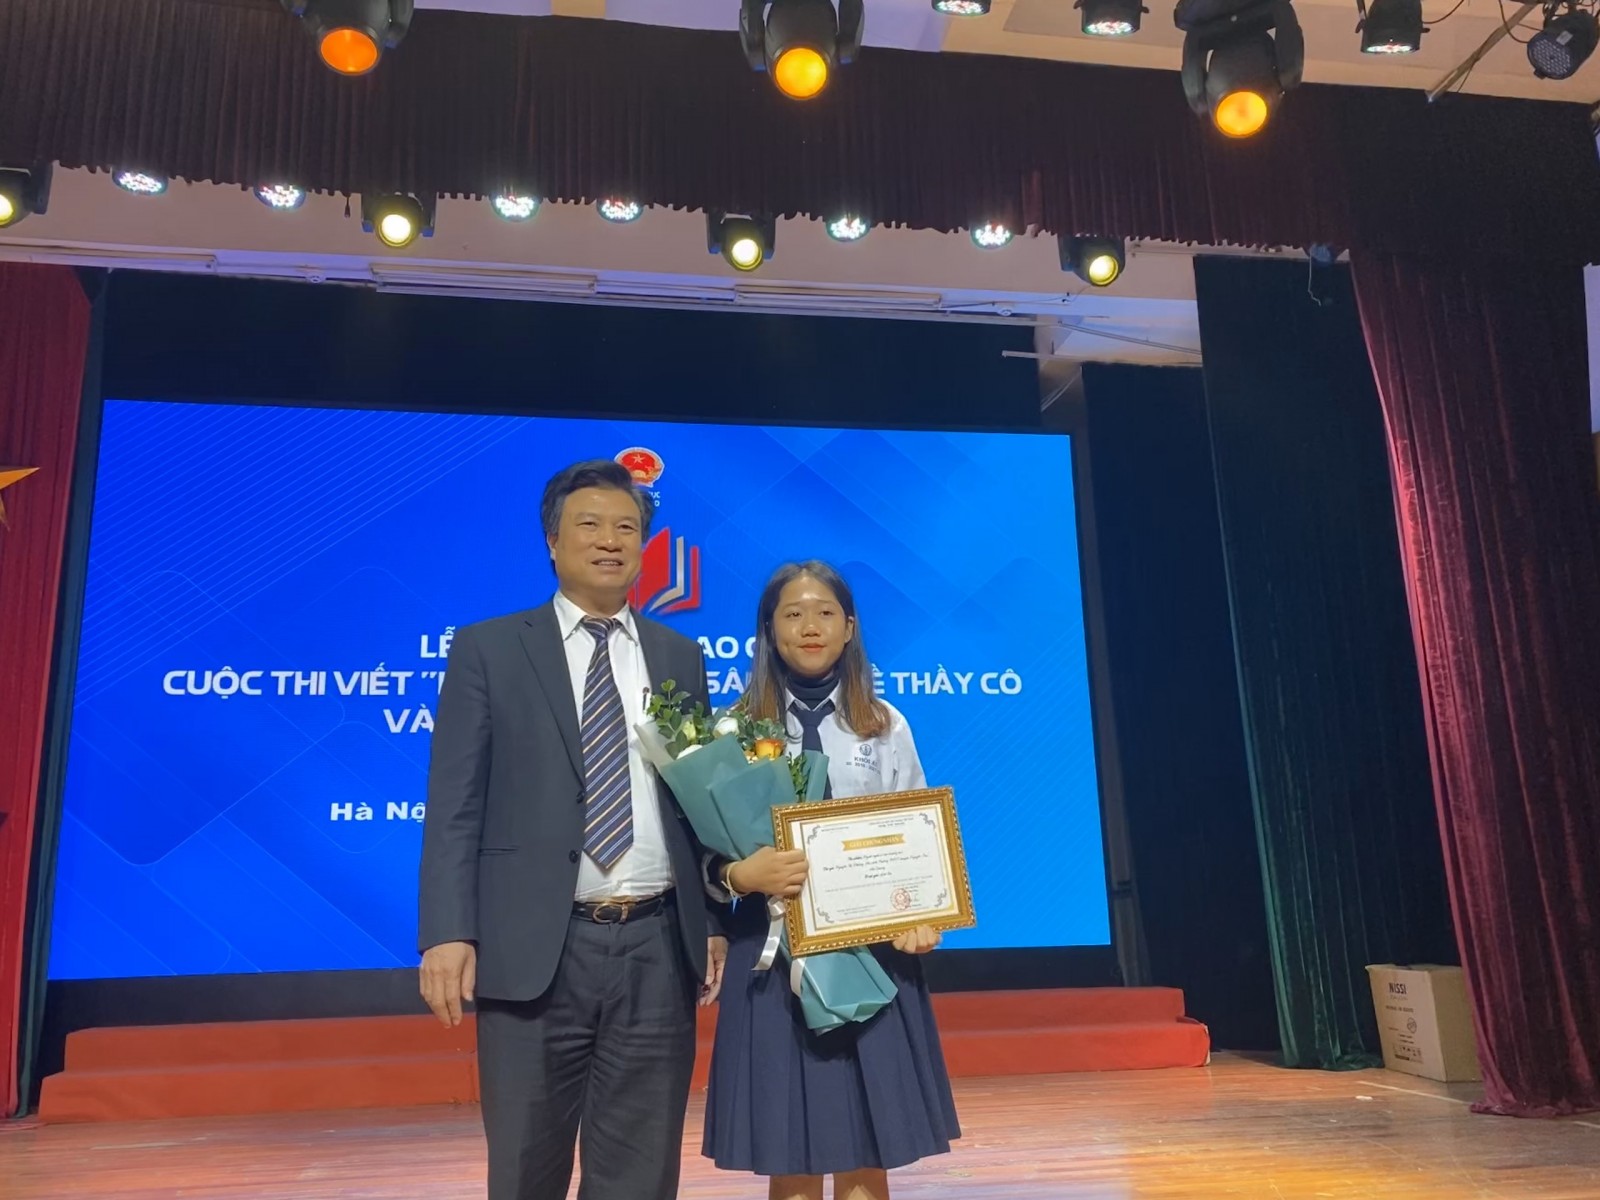 Bạn Nguyễn Thị Nhung - 12 A1 xuất sắc đạt giải Ba quốc gia cuộc thi viết “Những kỉ niệm sâu sắc về thầy cô và mái trường mến yêu”.